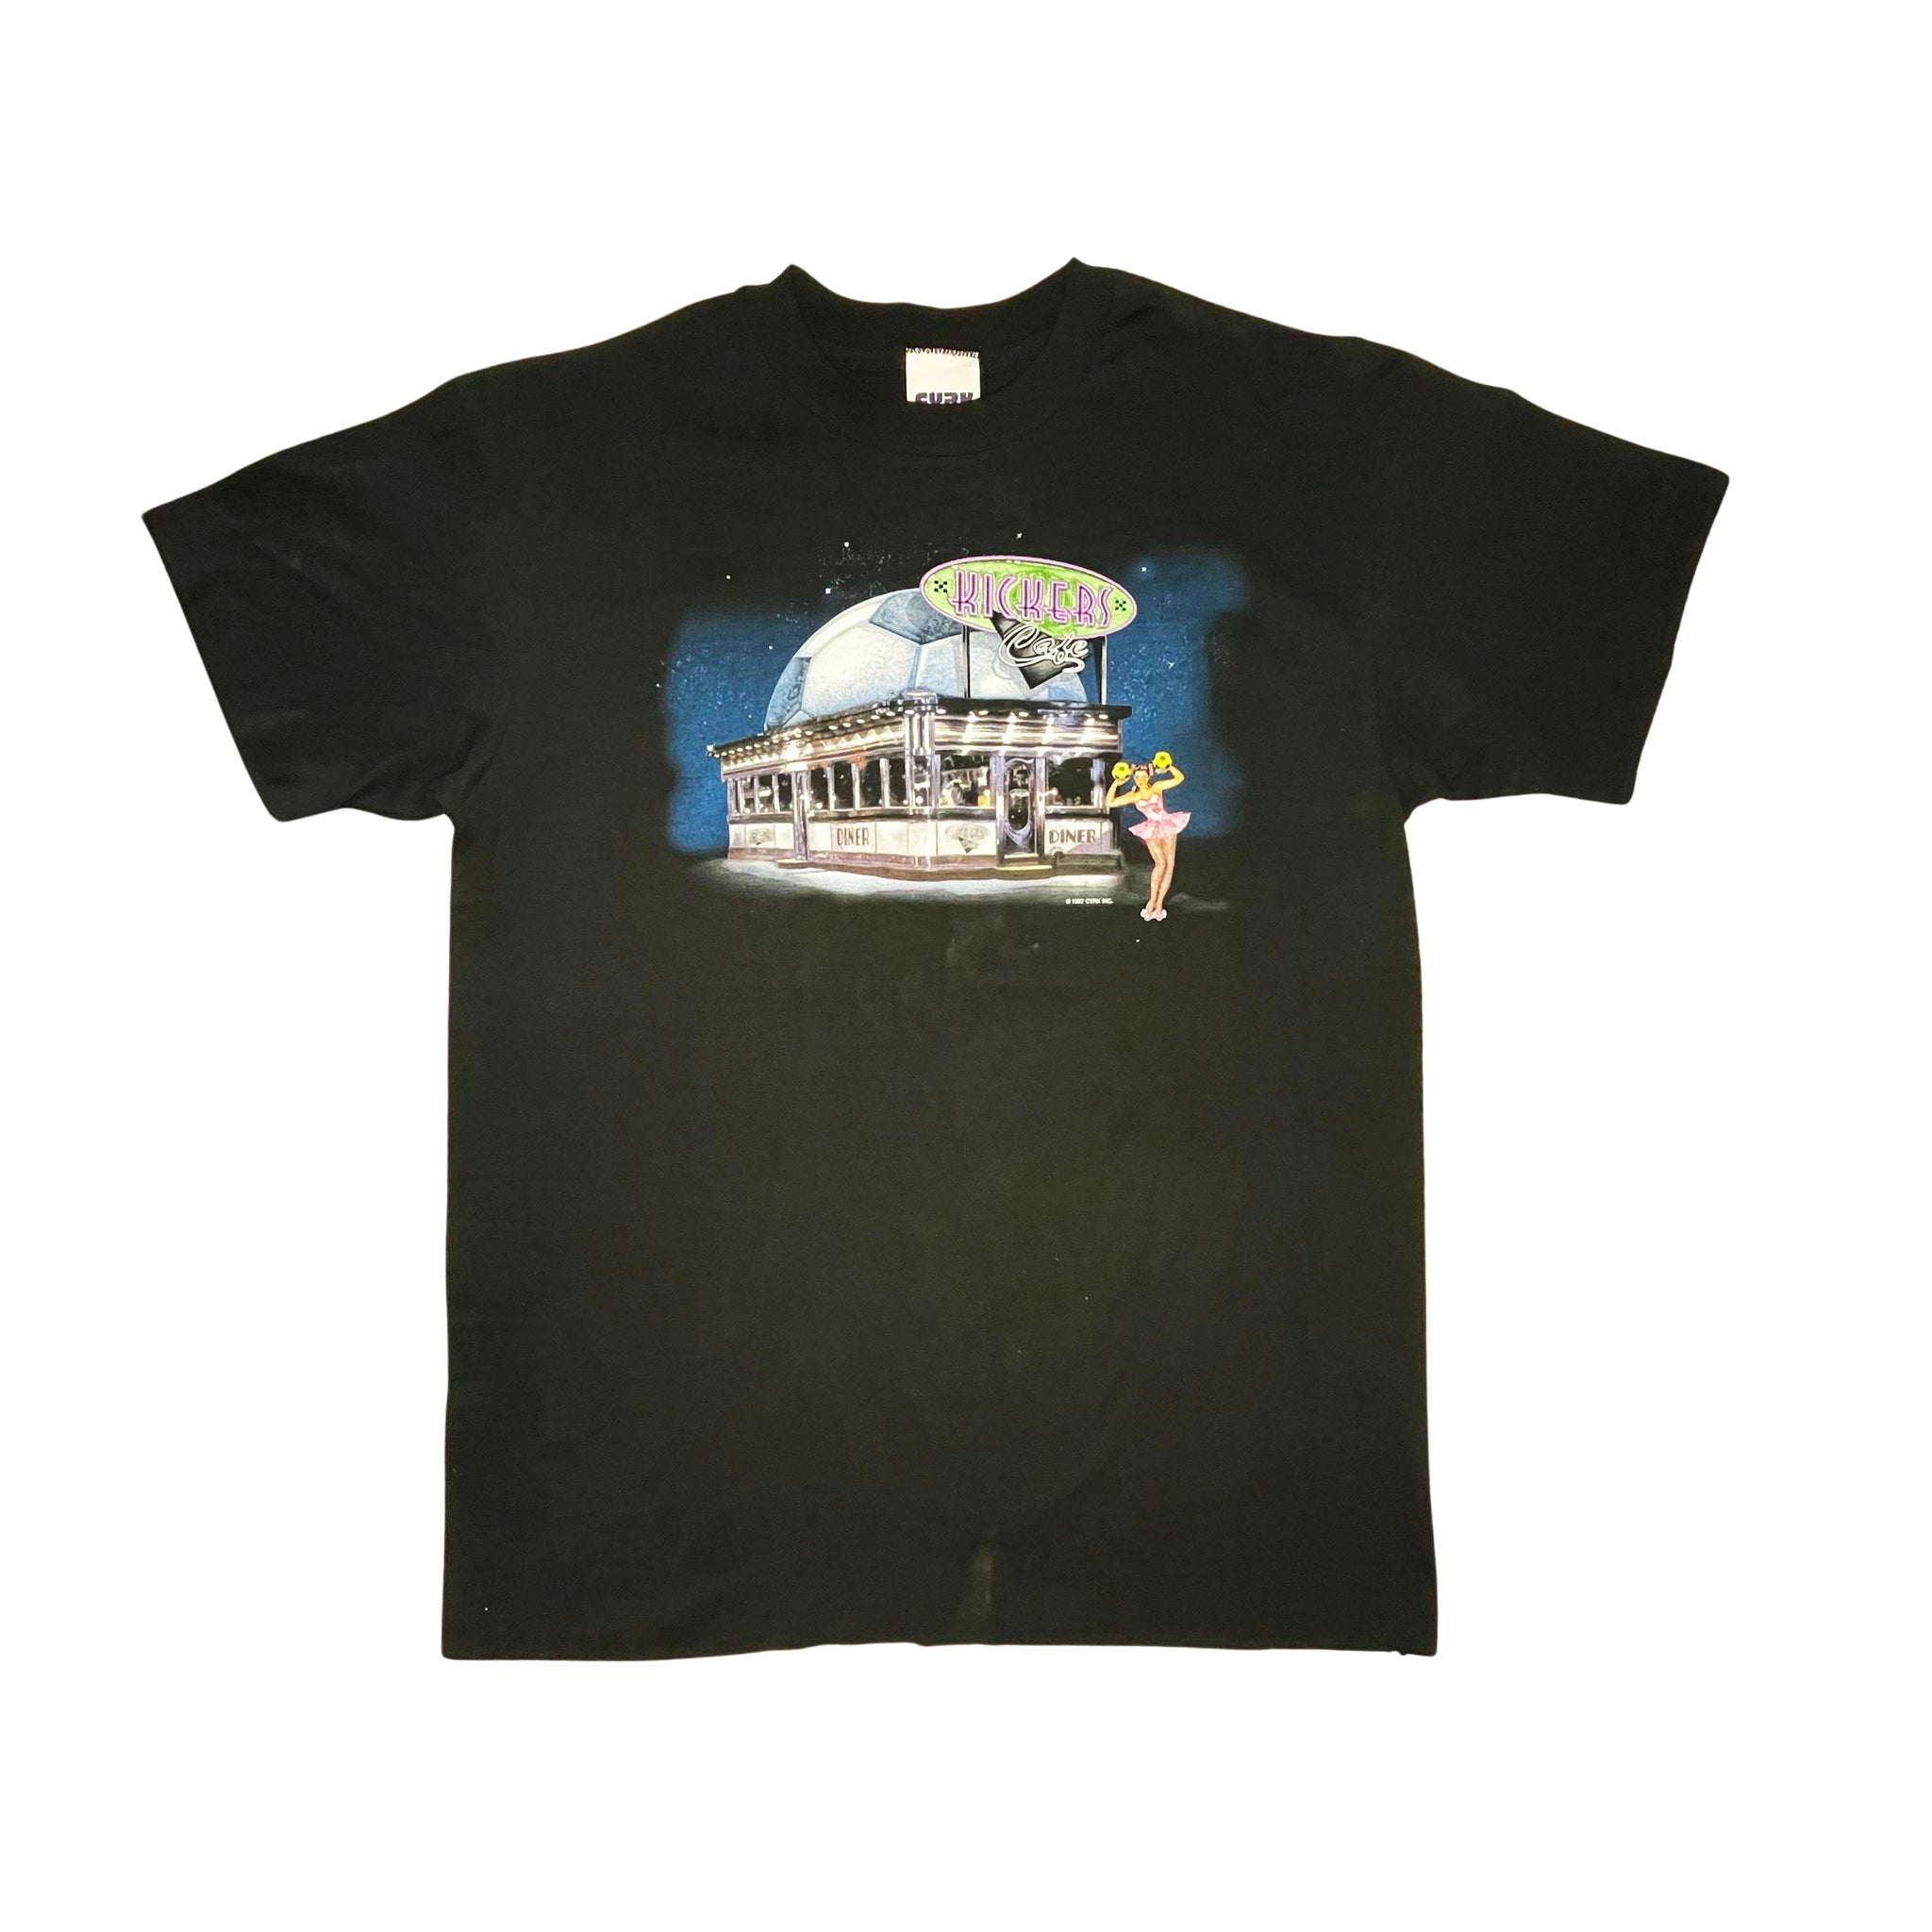 CYRK Kickers Cafe STAFF T-Shirt - M/L